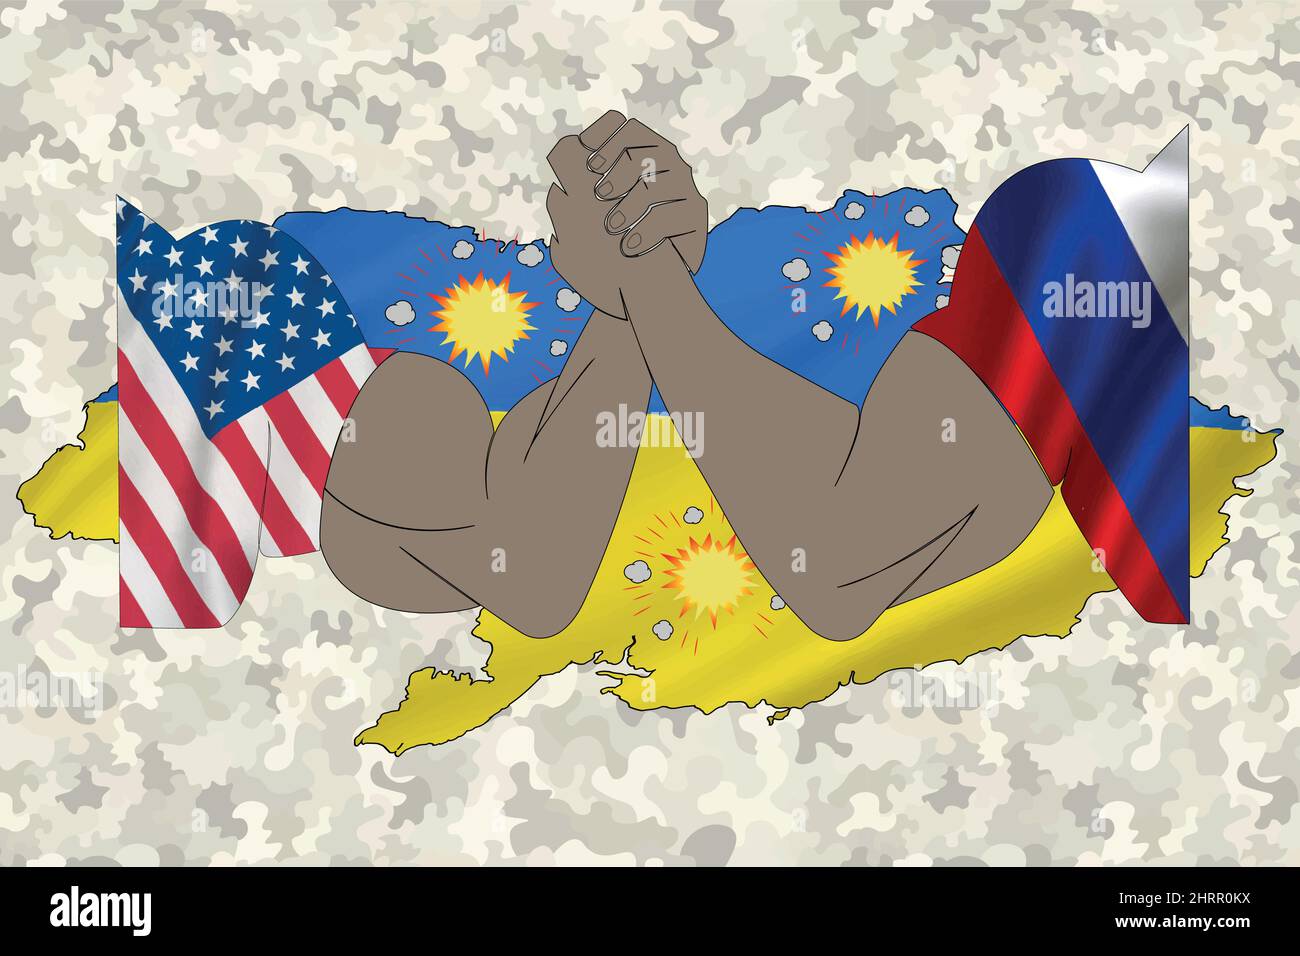 Vektorgrafik, Nahaufnahme, Armringen der USA gegen Russland auf ukrainischer Flagge. Konzept der Kriegskrise und der politischen Konflikte zwischen den Nationen. Stock Vektor